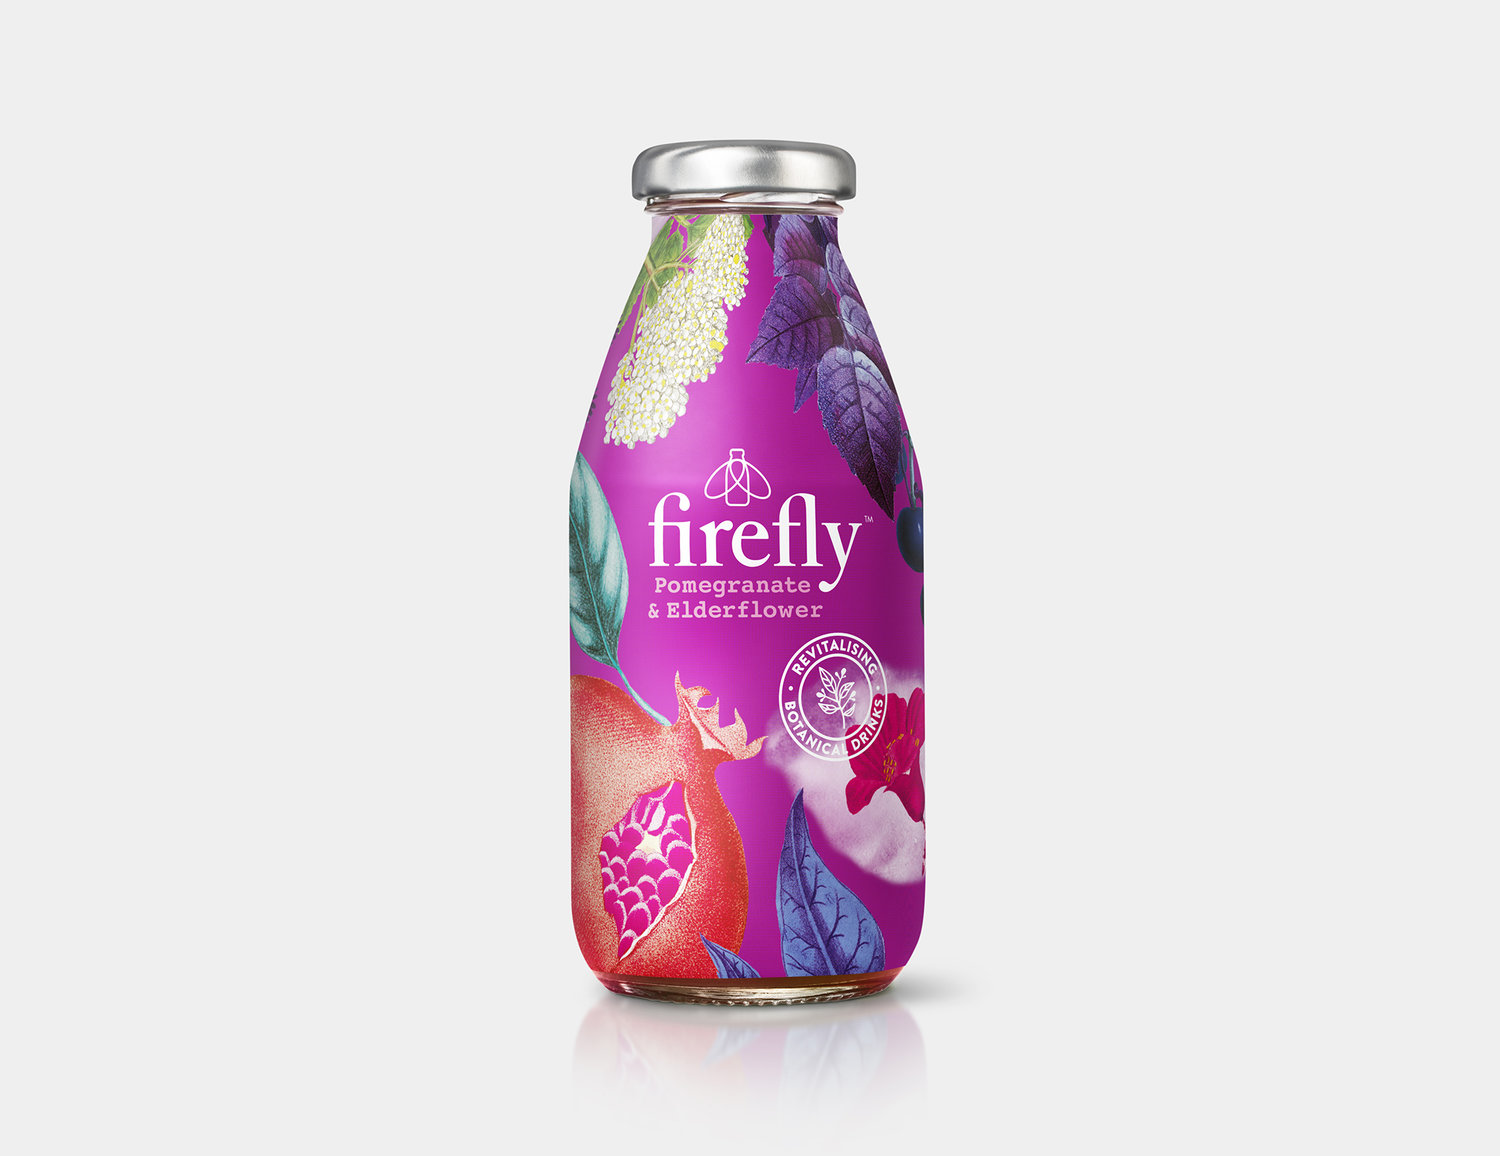 限量版FIREFLY植物混合饮料-提供来自大自然